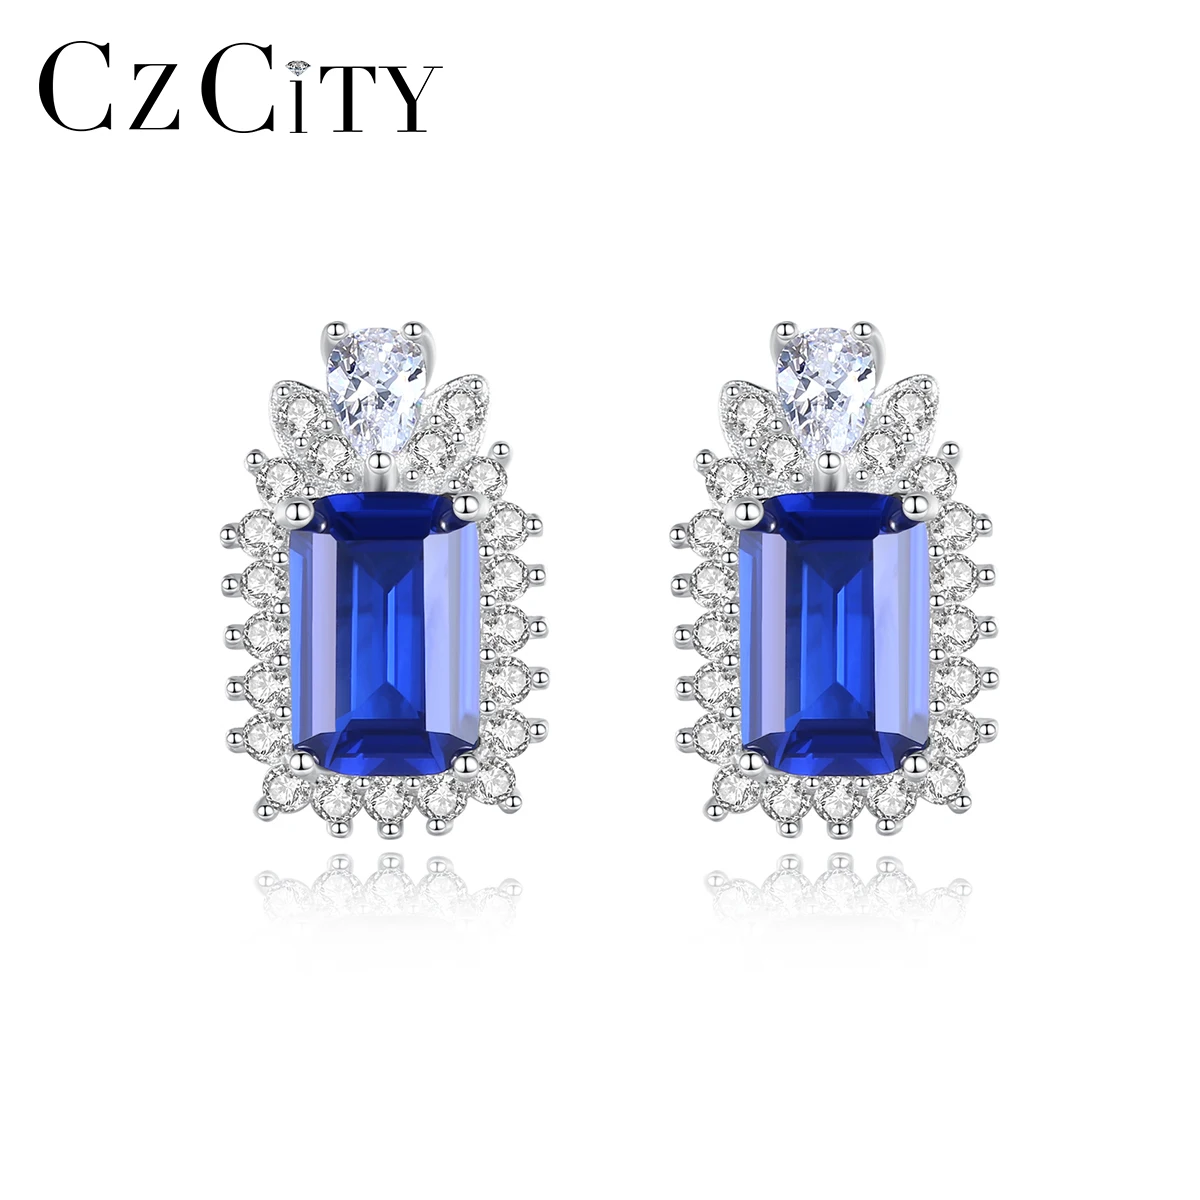 

CZCITY 2021 Women Stud Earrings 925 Sterling Silver Tiny CZ Paved Luxury Gemstone Type Earring